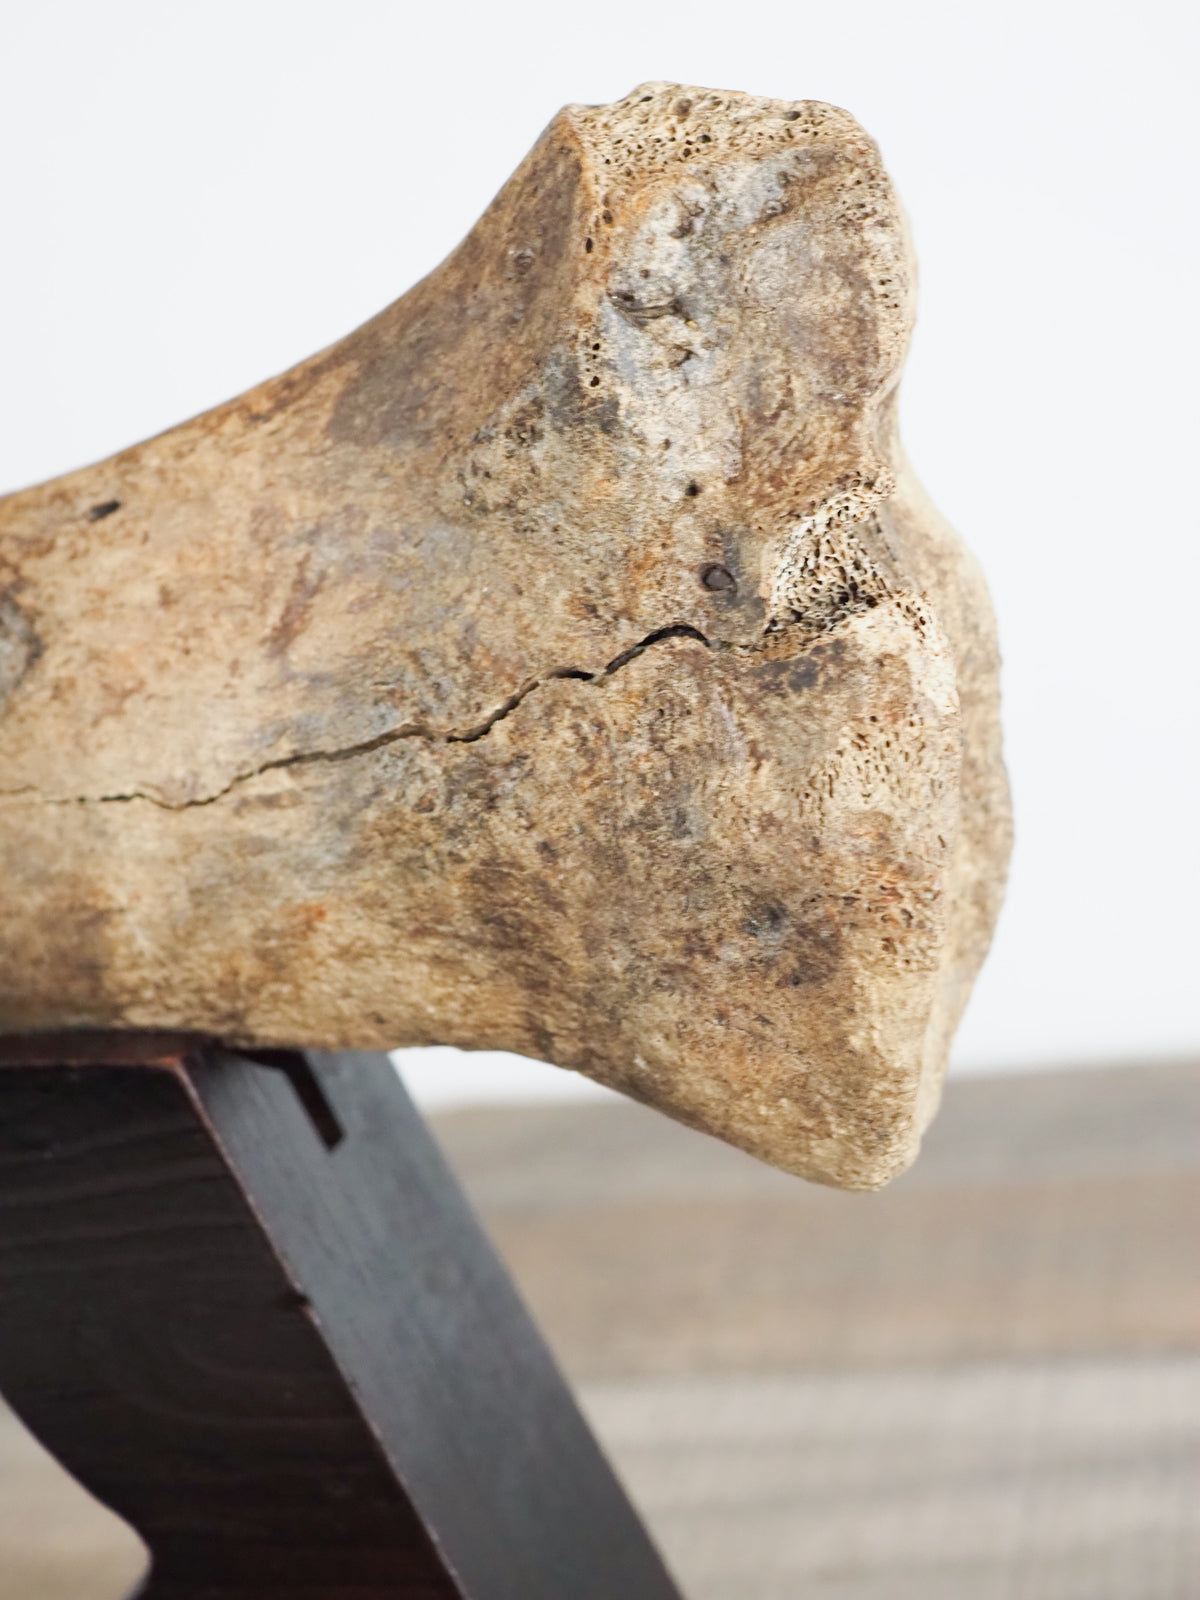 Pleistocene (Ice Age) Bison Radius Bone Fossil